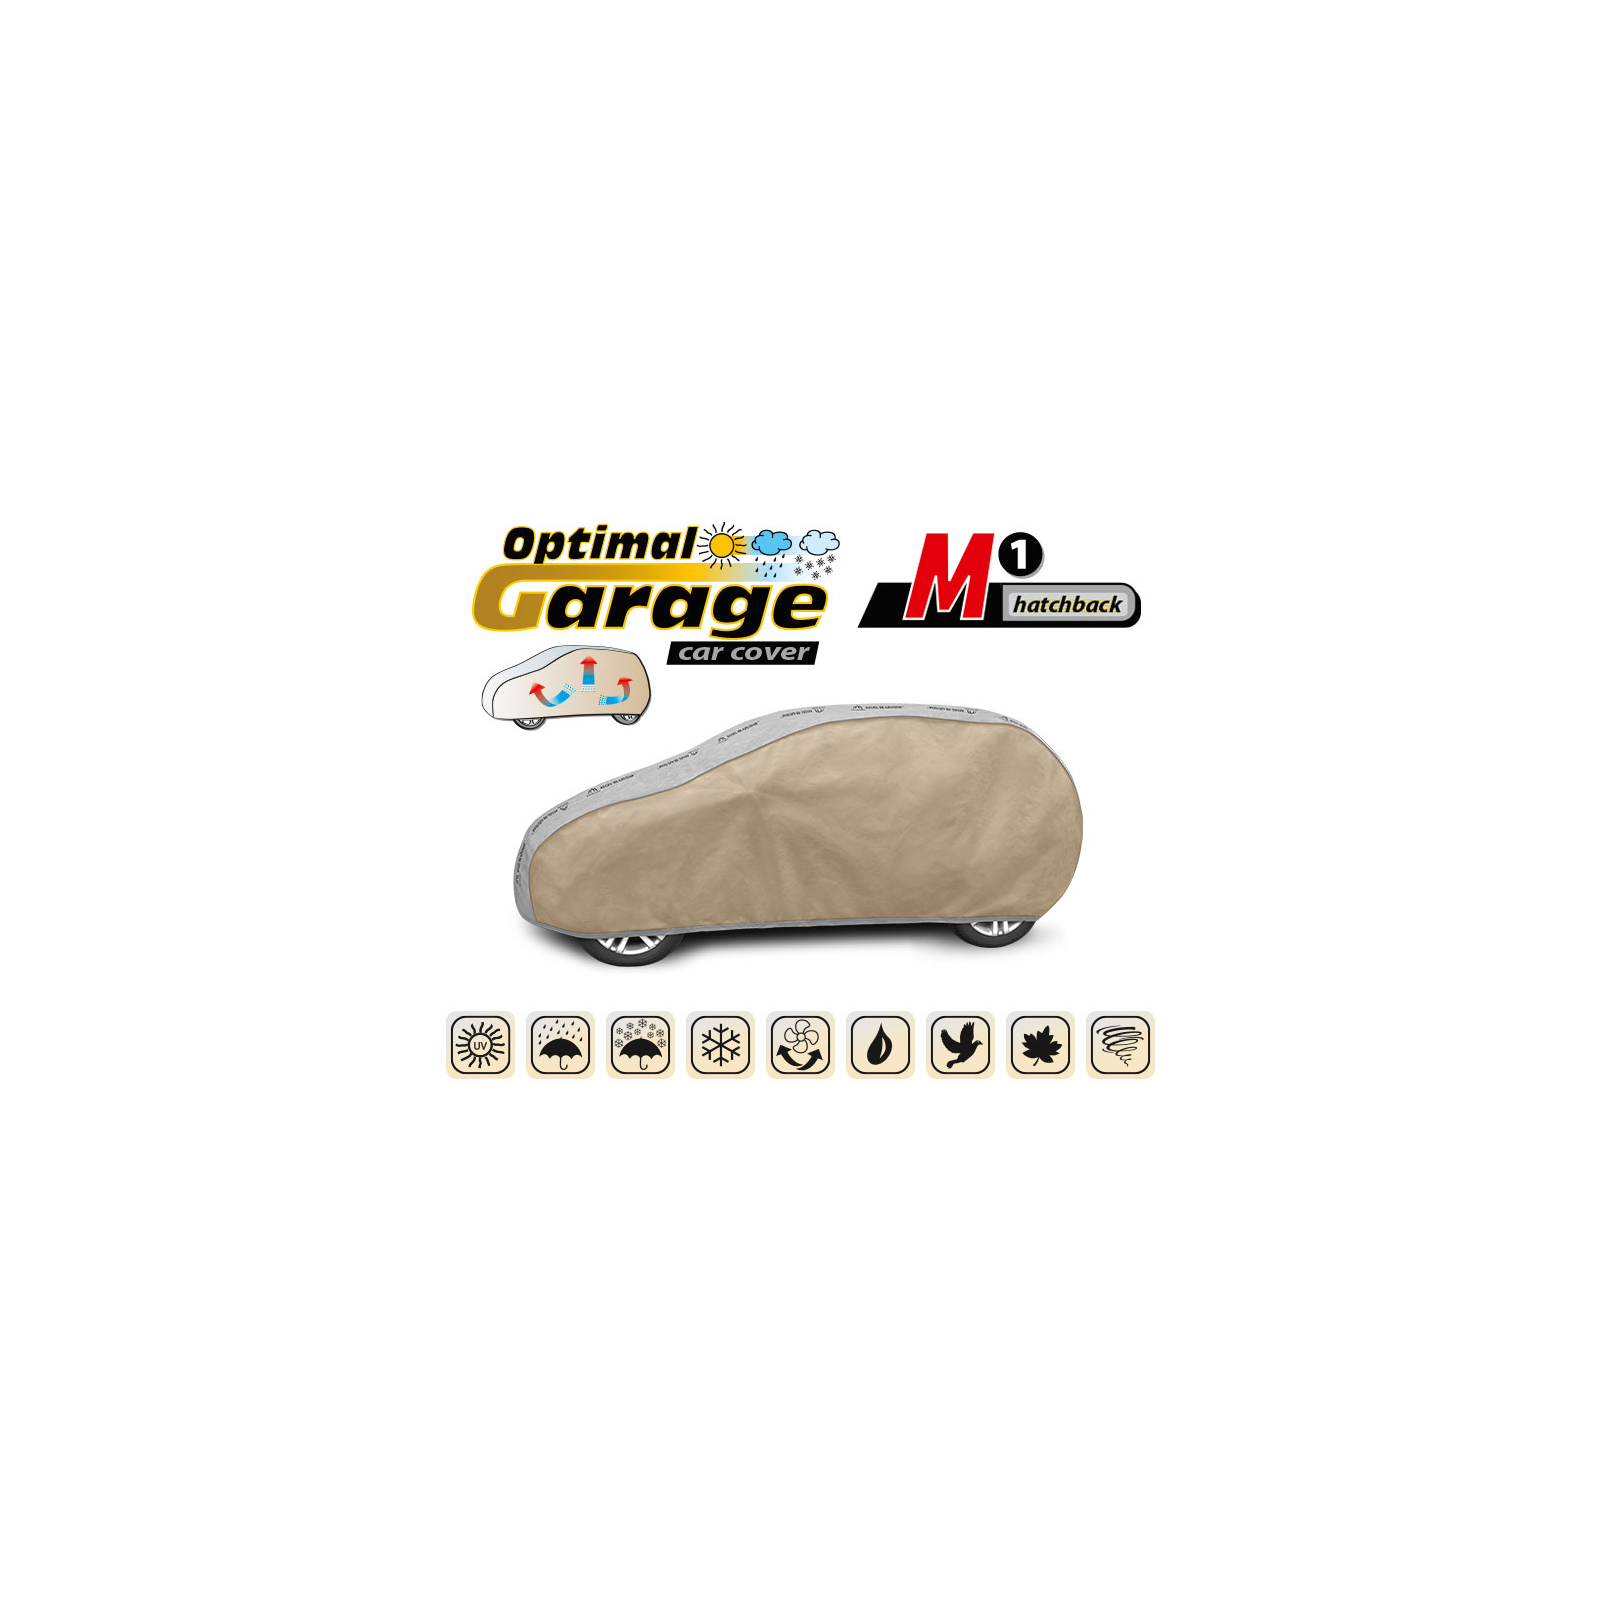 Тент автомобильный Kegel-Blazusiak "Optimal Garage" M1 hatchback (5-4313-241-2092) изображение 3